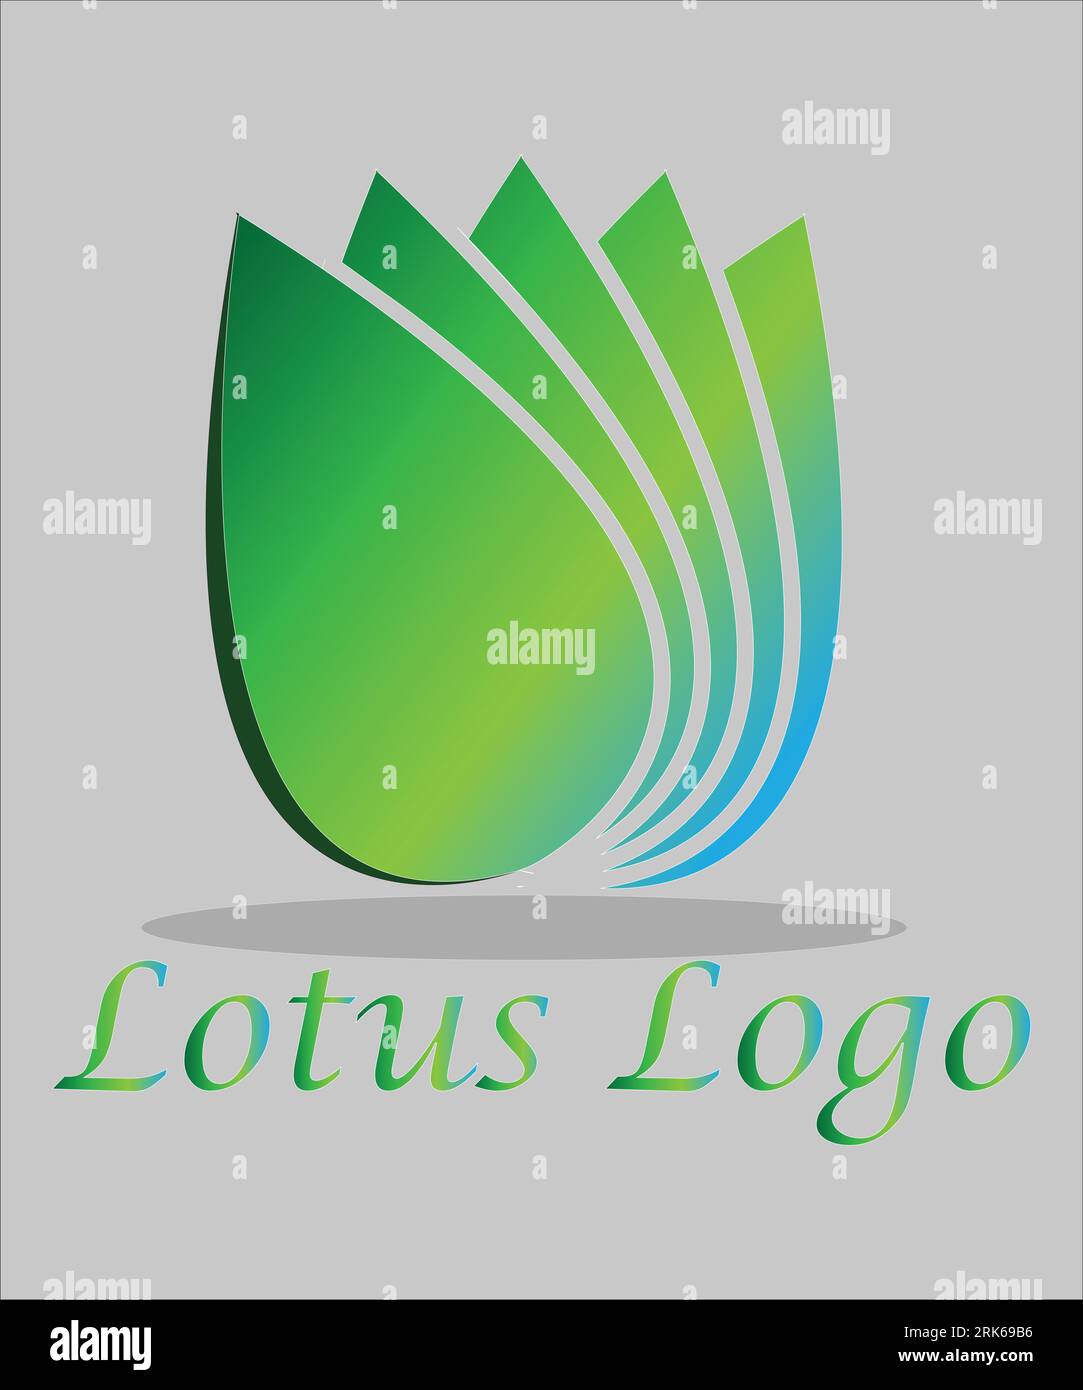 Identité de marque design de logo d'entreprise et minimaliste Illustration de Vecteur